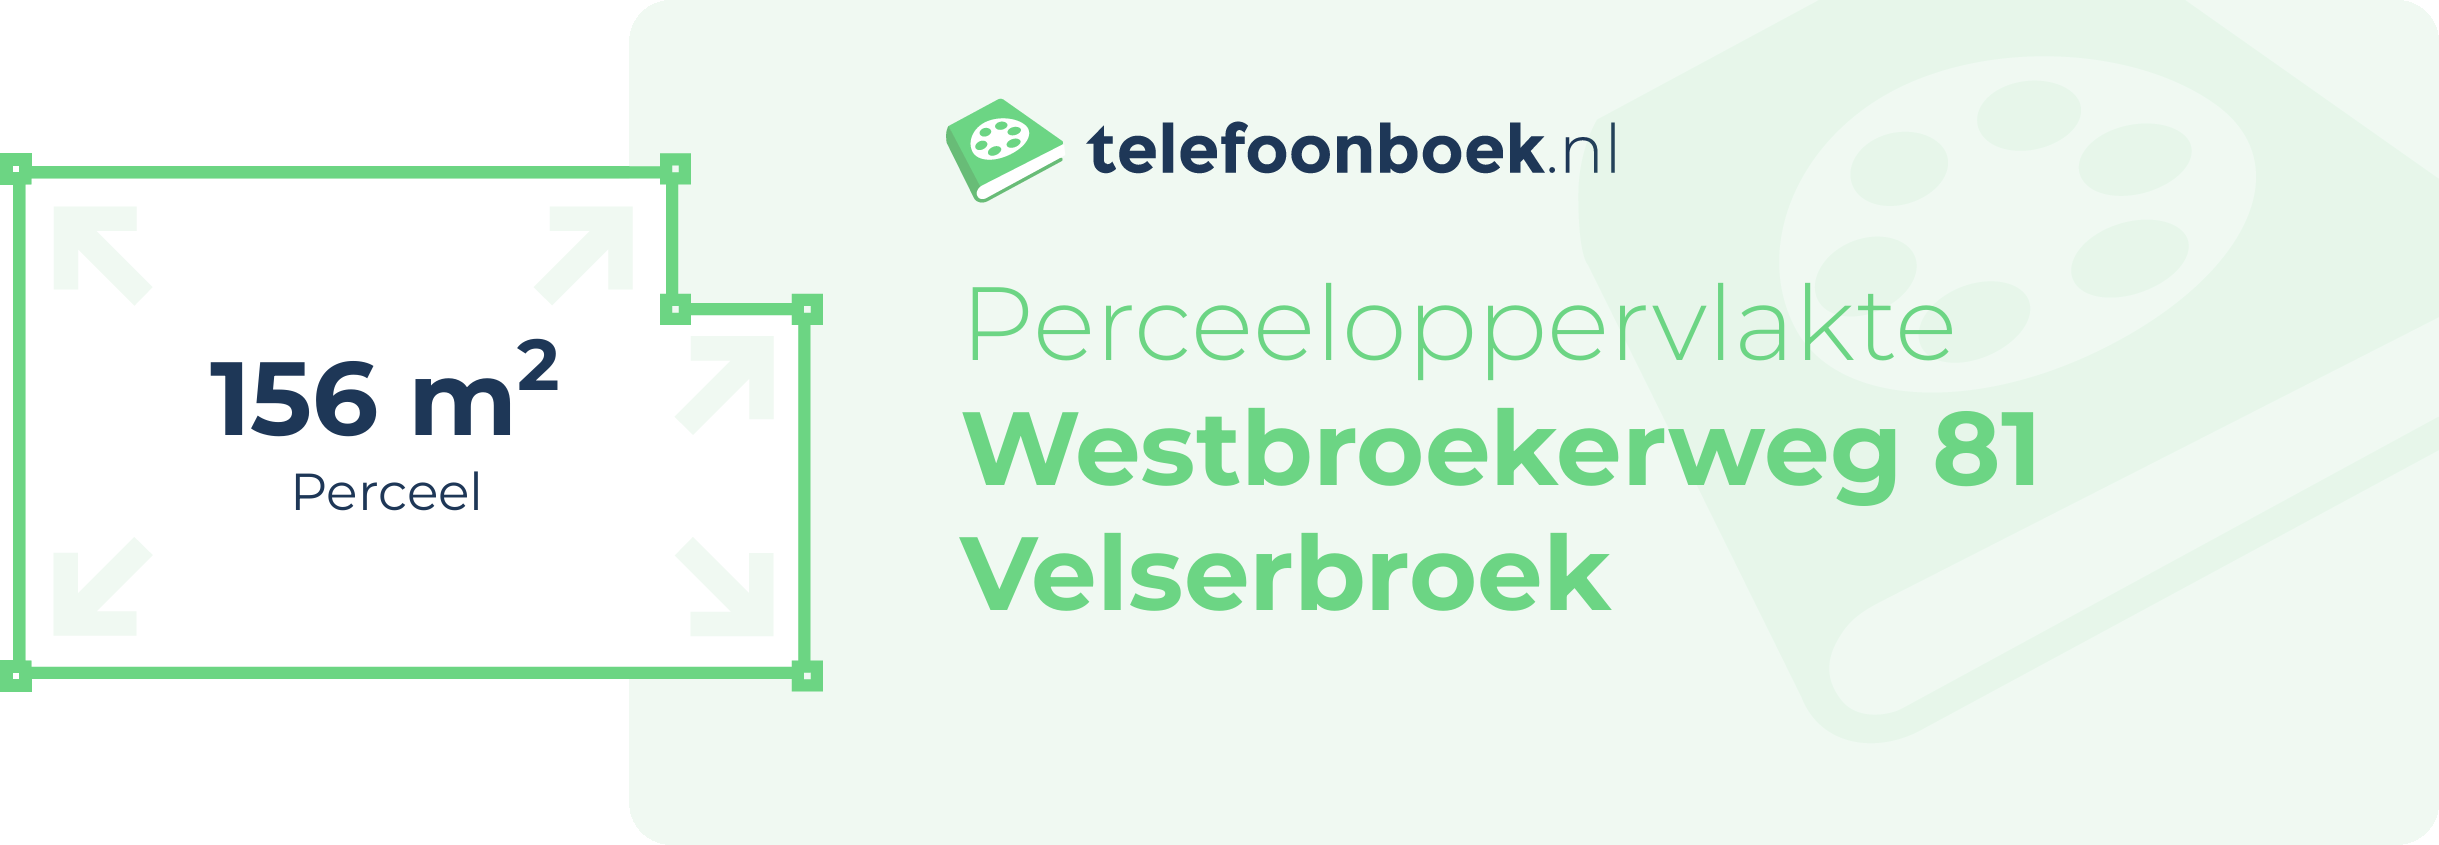 Perceeloppervlakte Westbroekerweg 81 Velserbroek